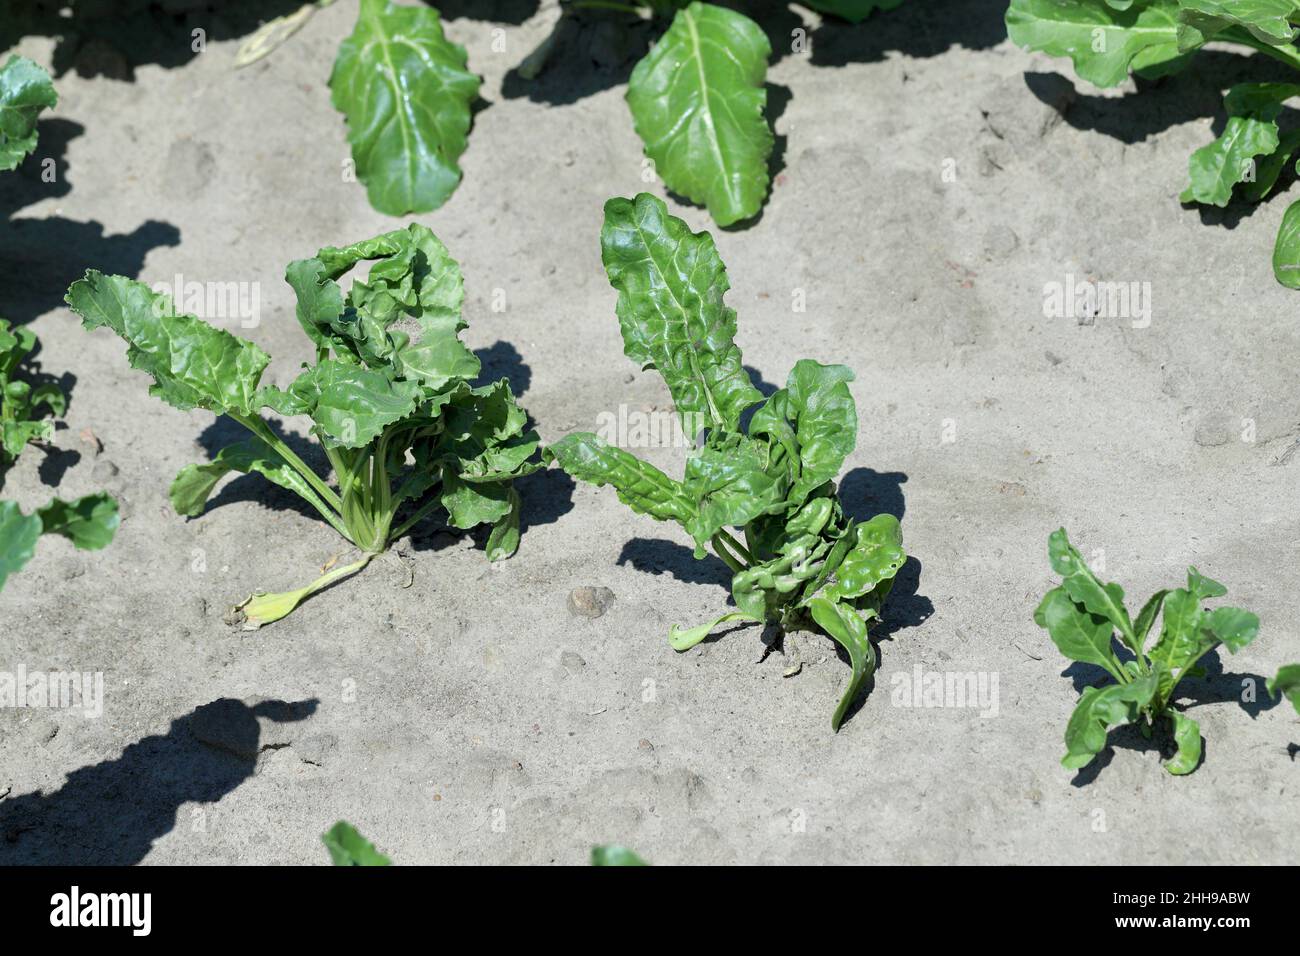 Plantes de betterave endommagées par les produits de protection des cultures - phytotoxicité, plantes déformées. Banque D'Images